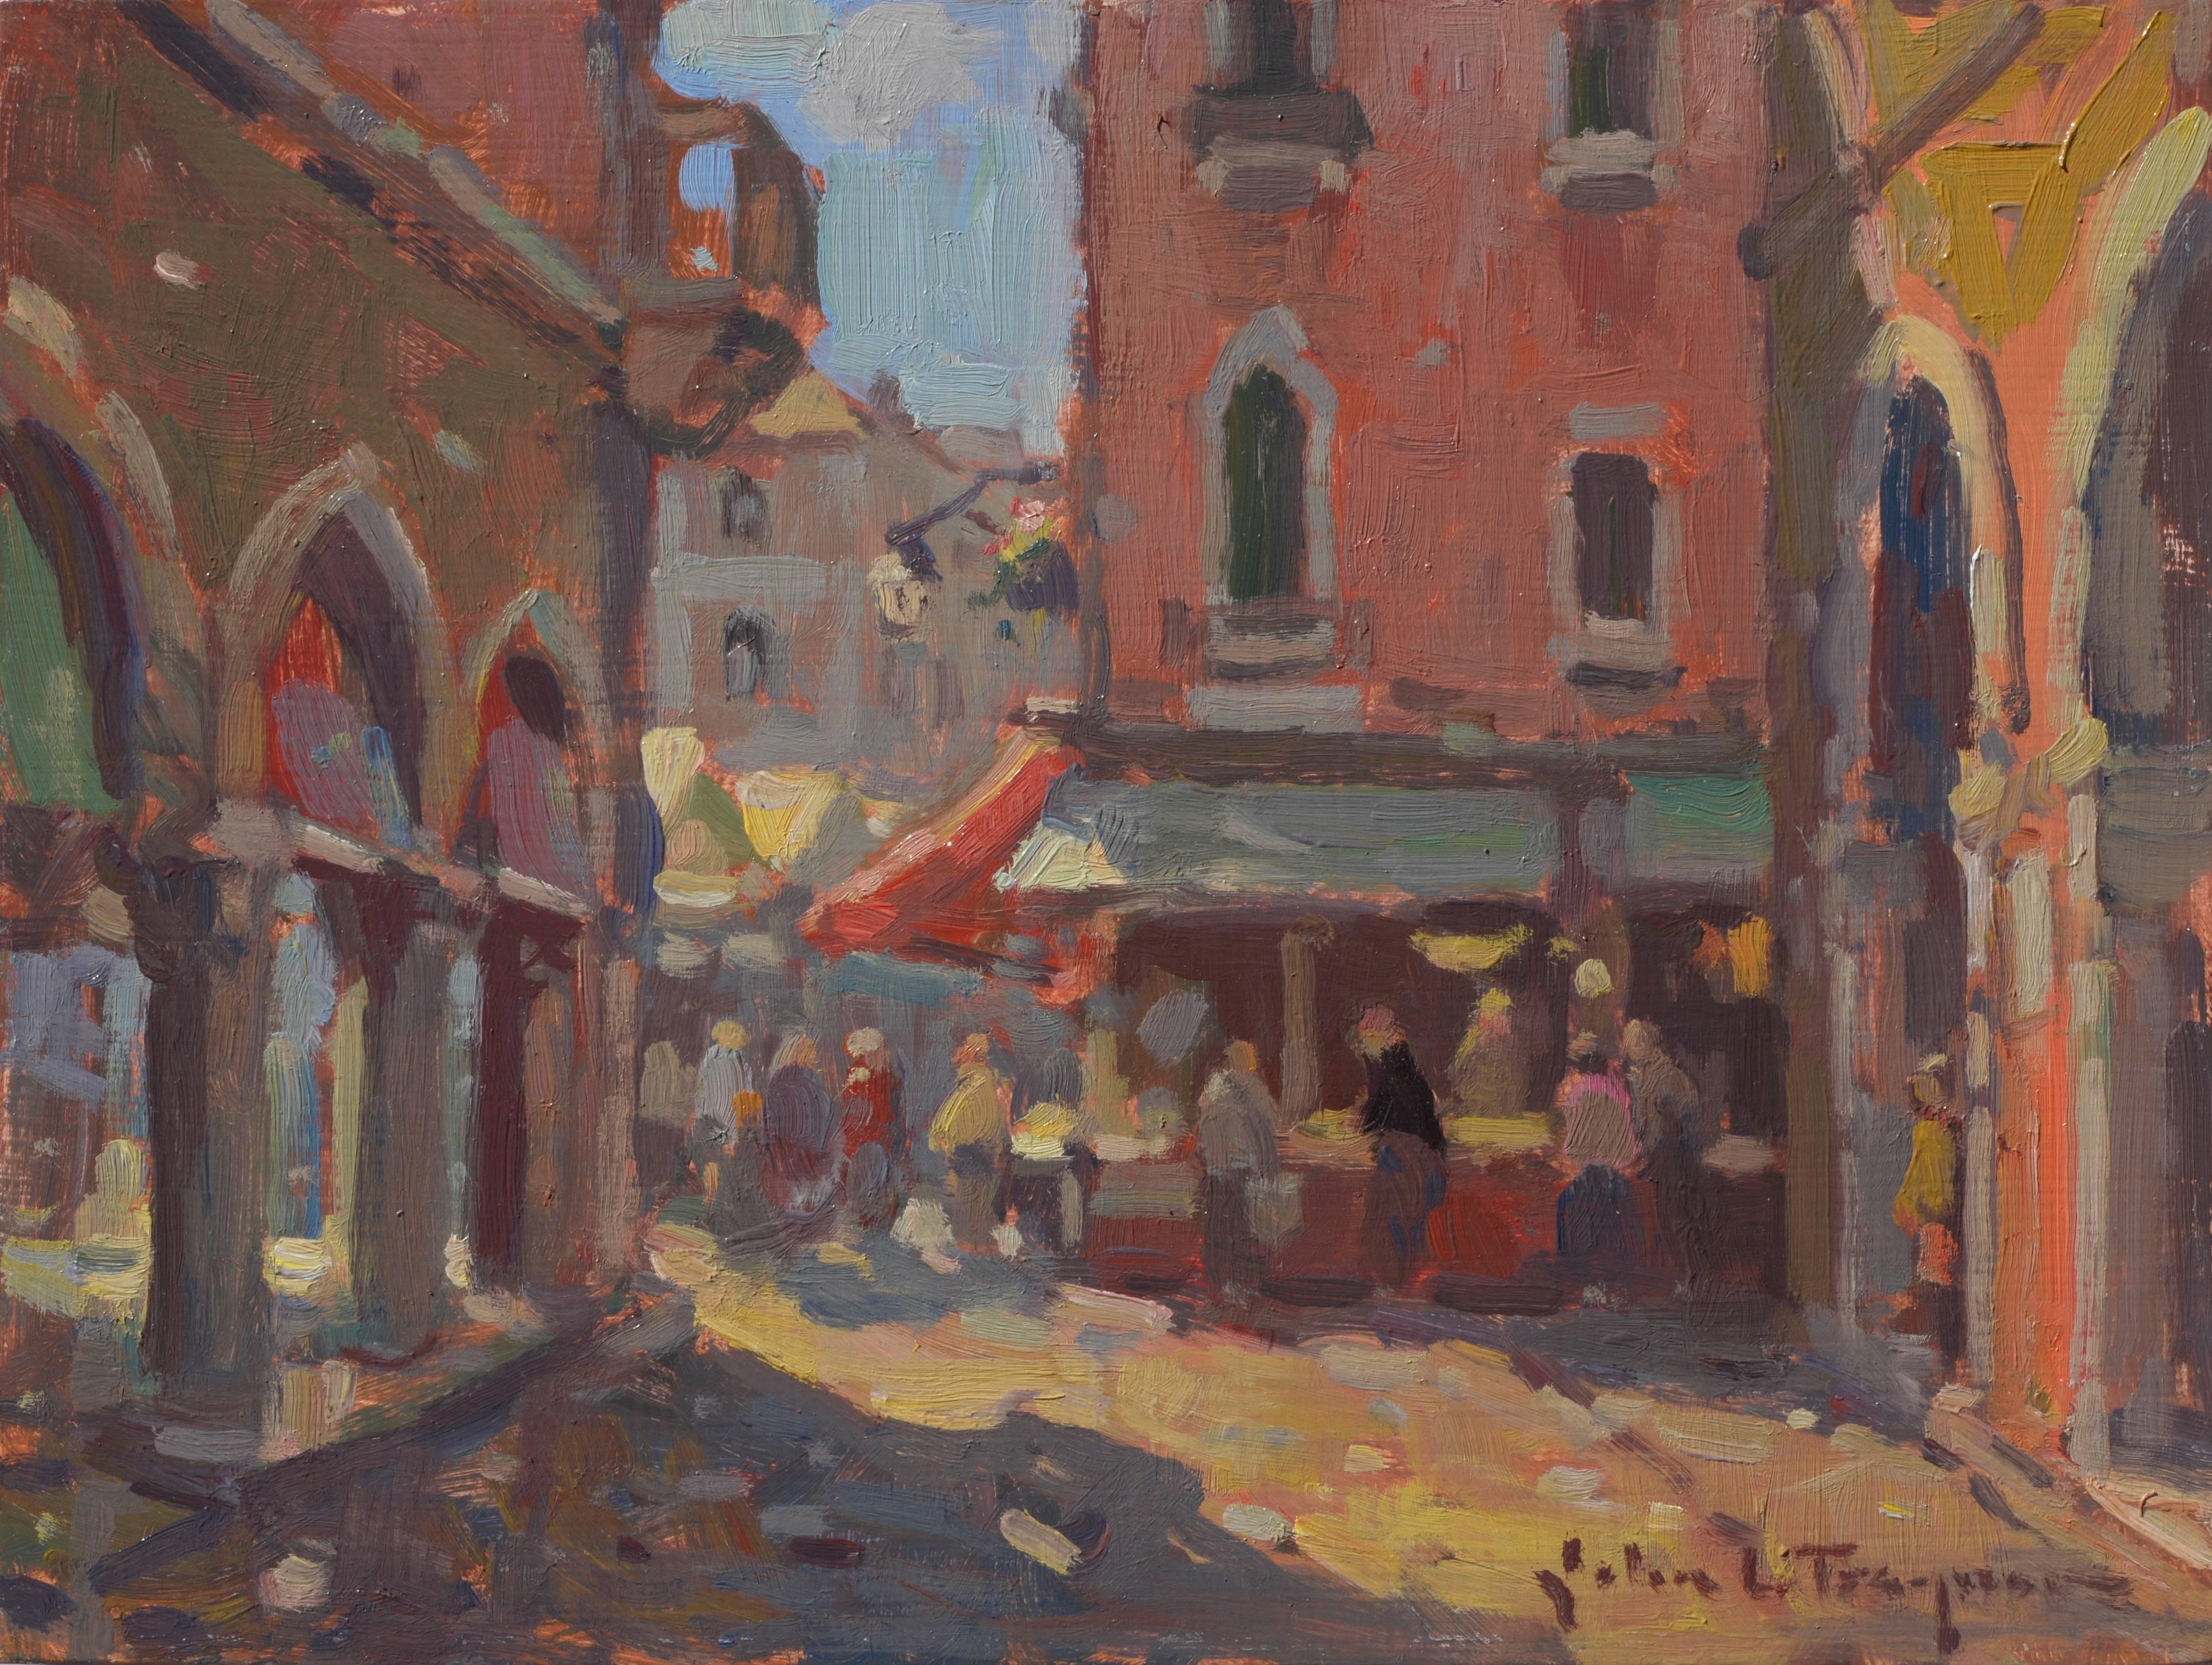 Rialto Marketplace - Painting by John C. Traynor